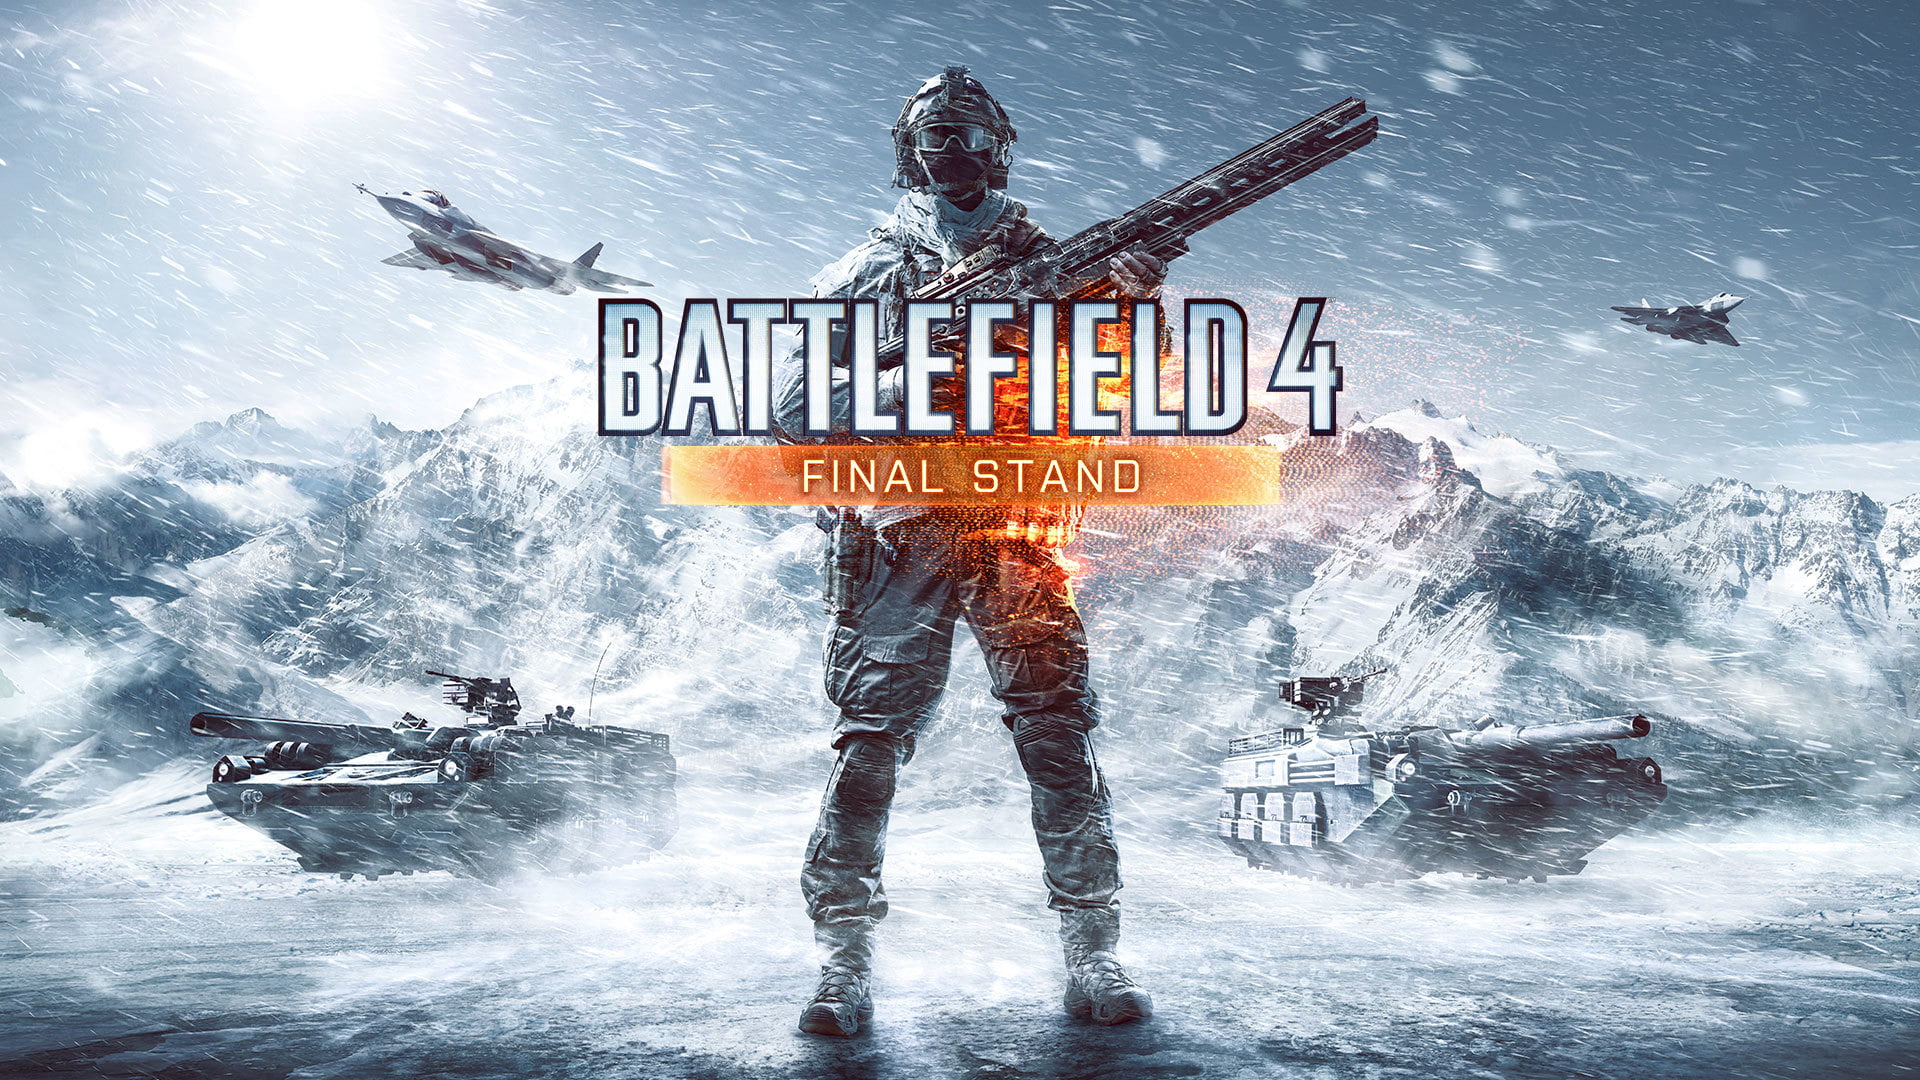 Battlefield Final Stand 4 wallpaper, DLC, DICE, Premium, Battlefield 4